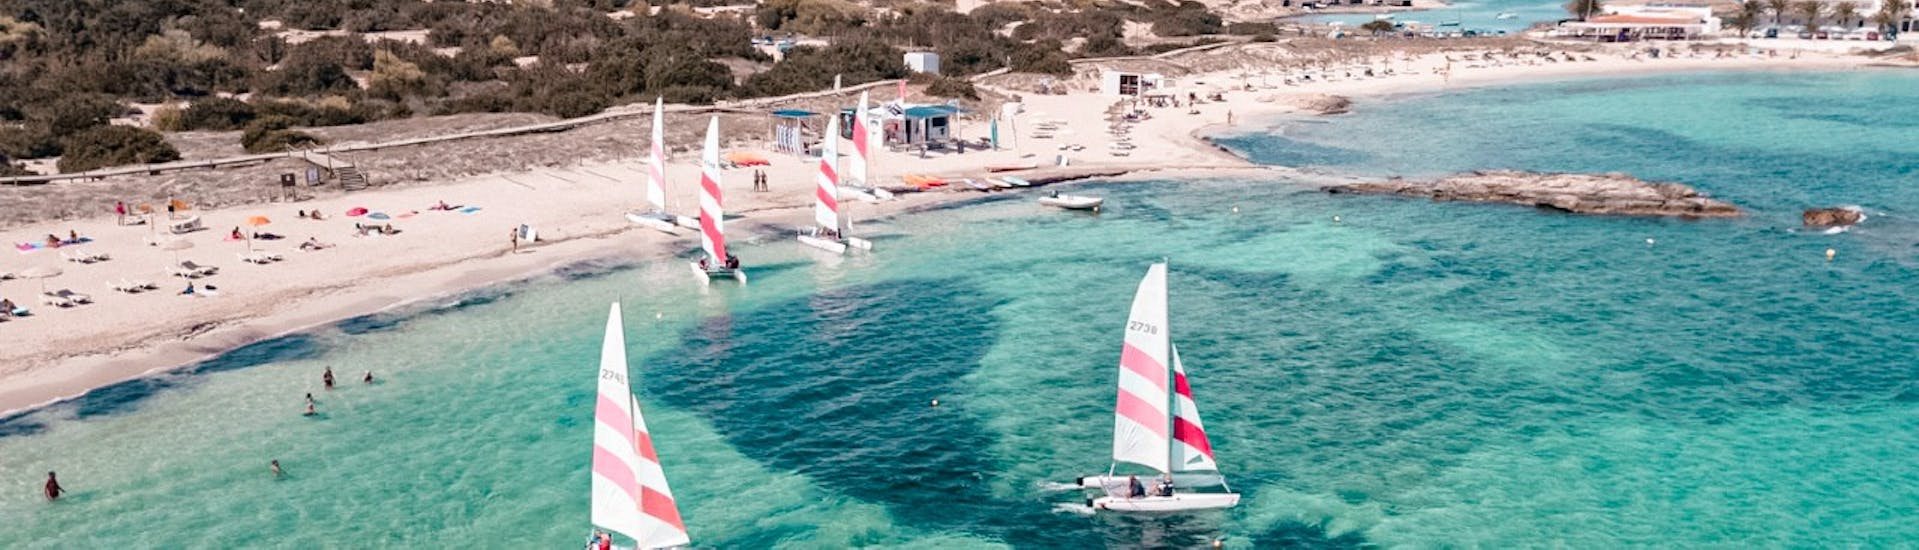 Vista aérea de la bahía de Es Pujols dónde aparecen varios barcos veleros de alquiler de Wet4Fun Formentera para hasta 5 personas sin licencia.